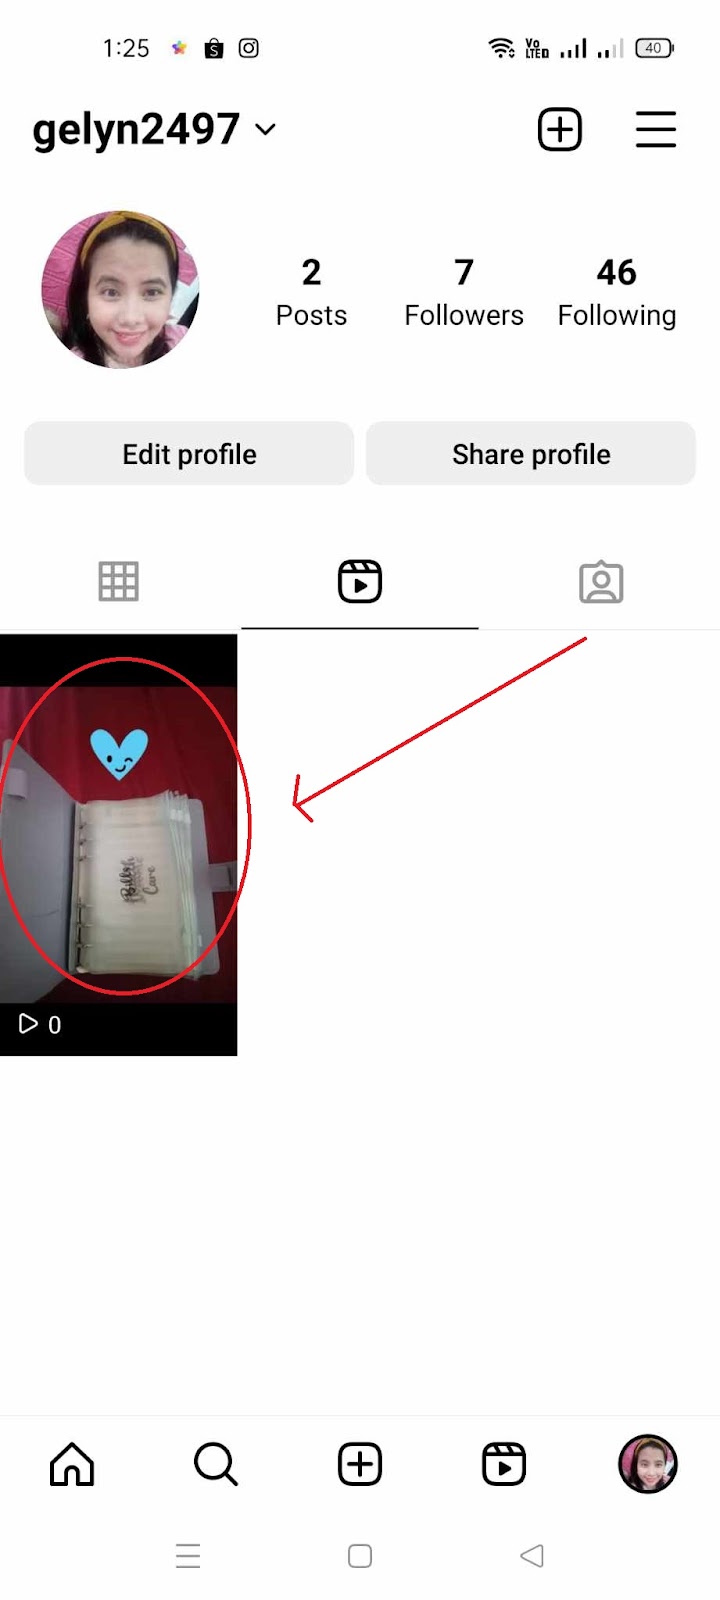 Archive Reels on Instagram - Choose Reels